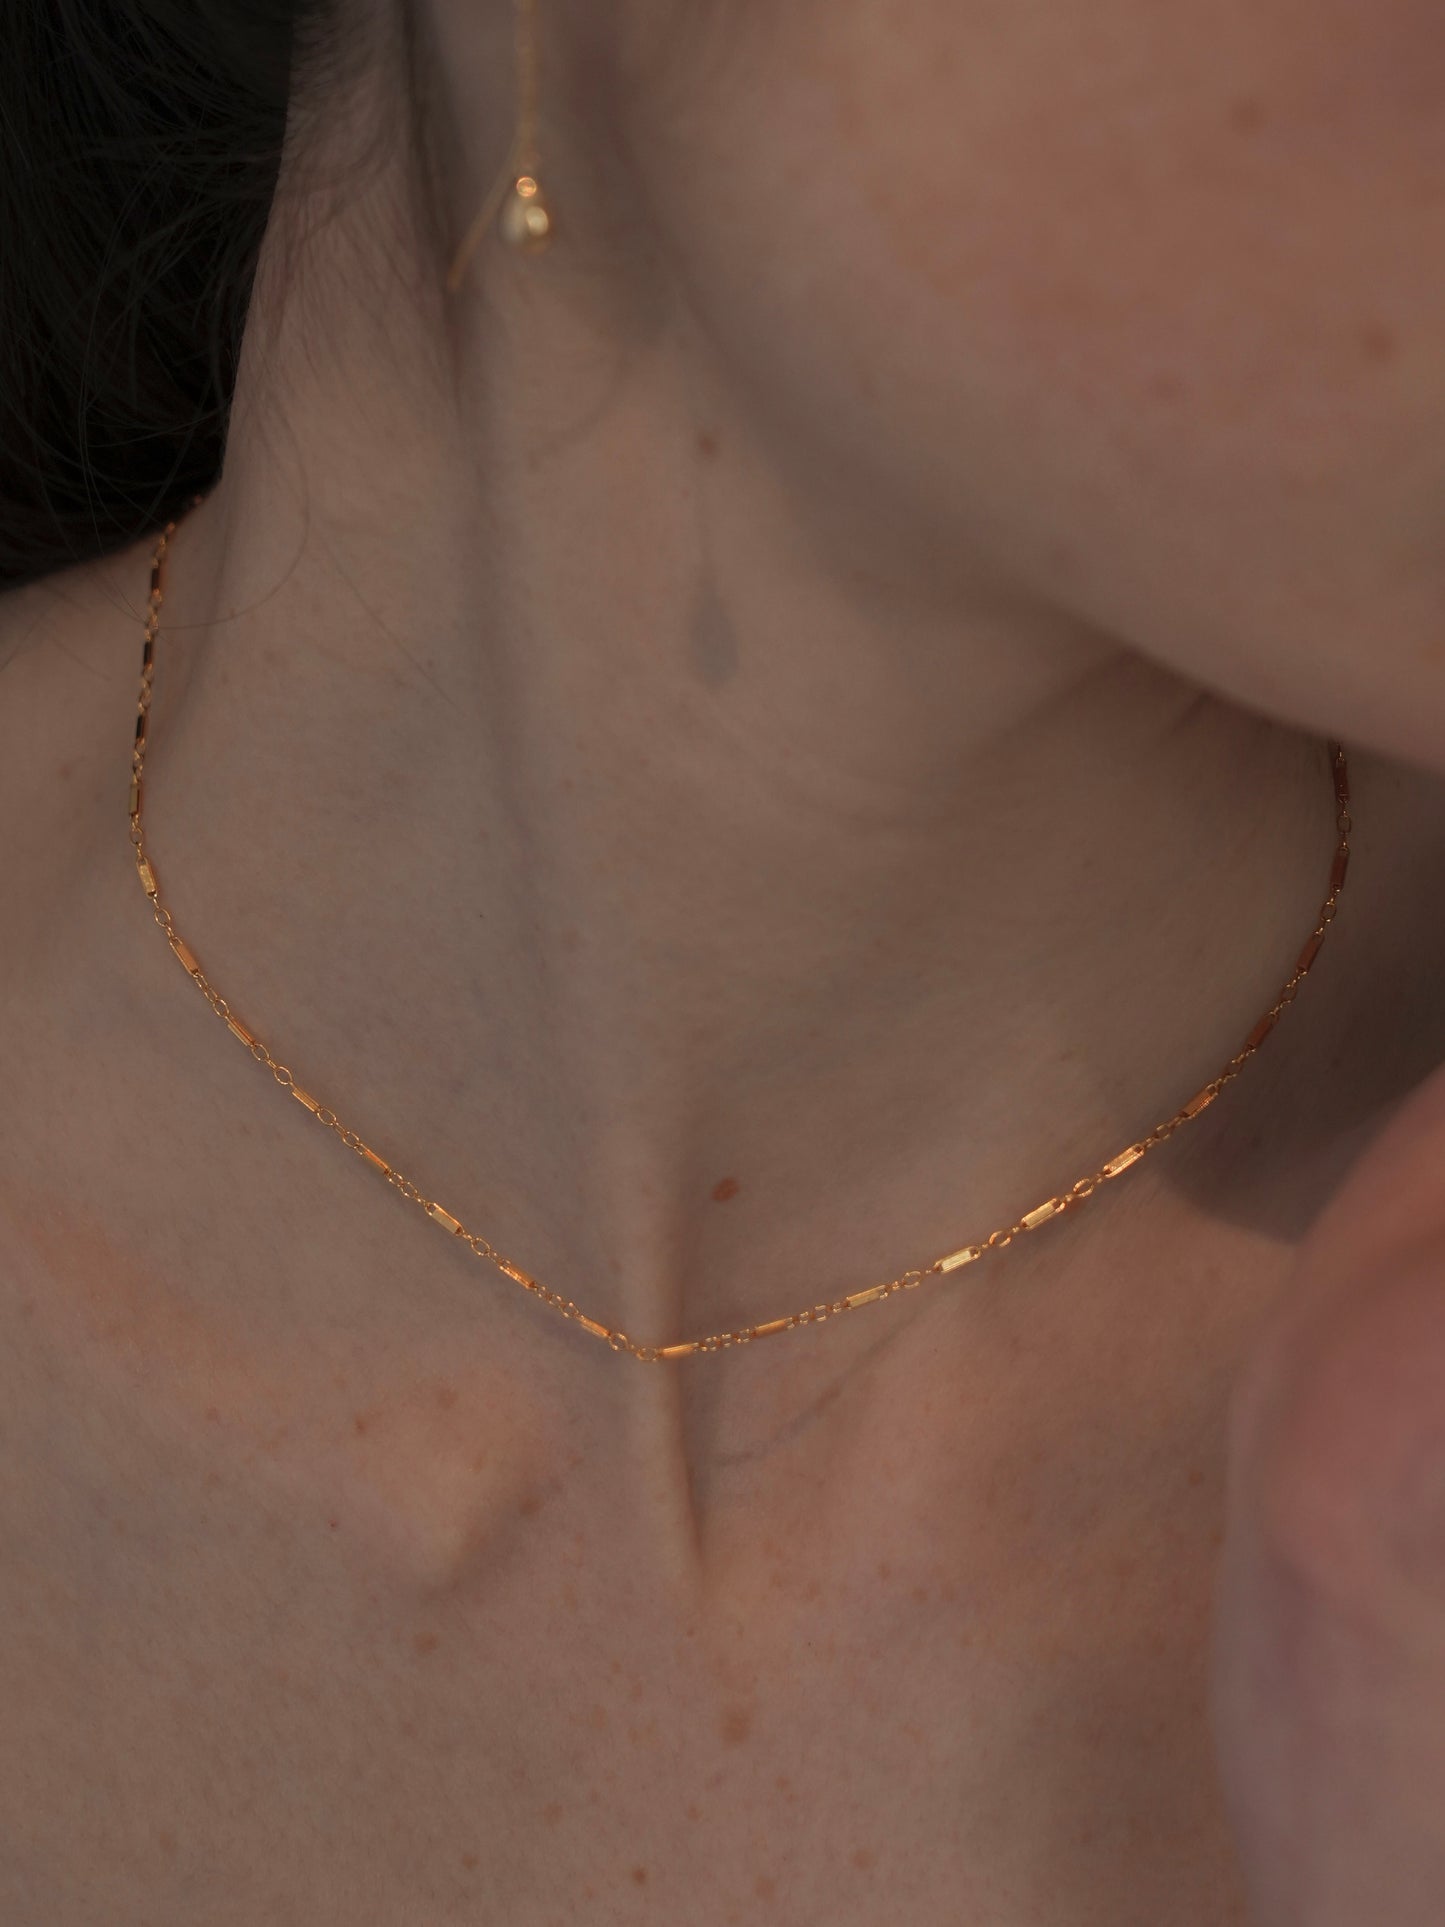 plano necklace / 14kgf